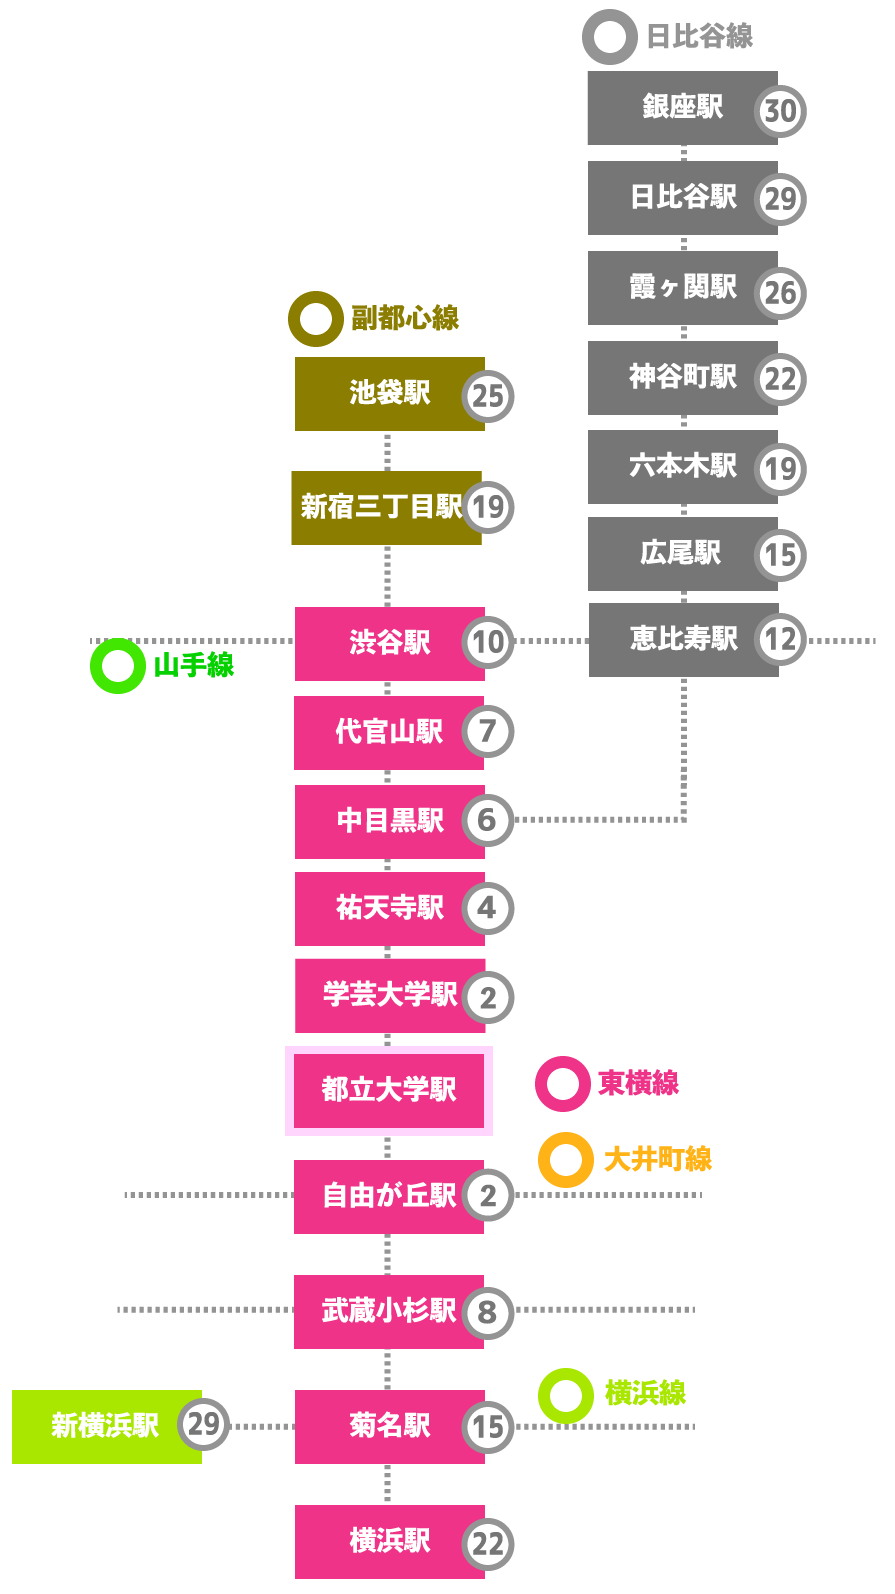 この画像は都立大学駅から東急東横線各駅への乗車時間、日比谷線・副都市線の代表駅への乗車時間をまとめた表です。